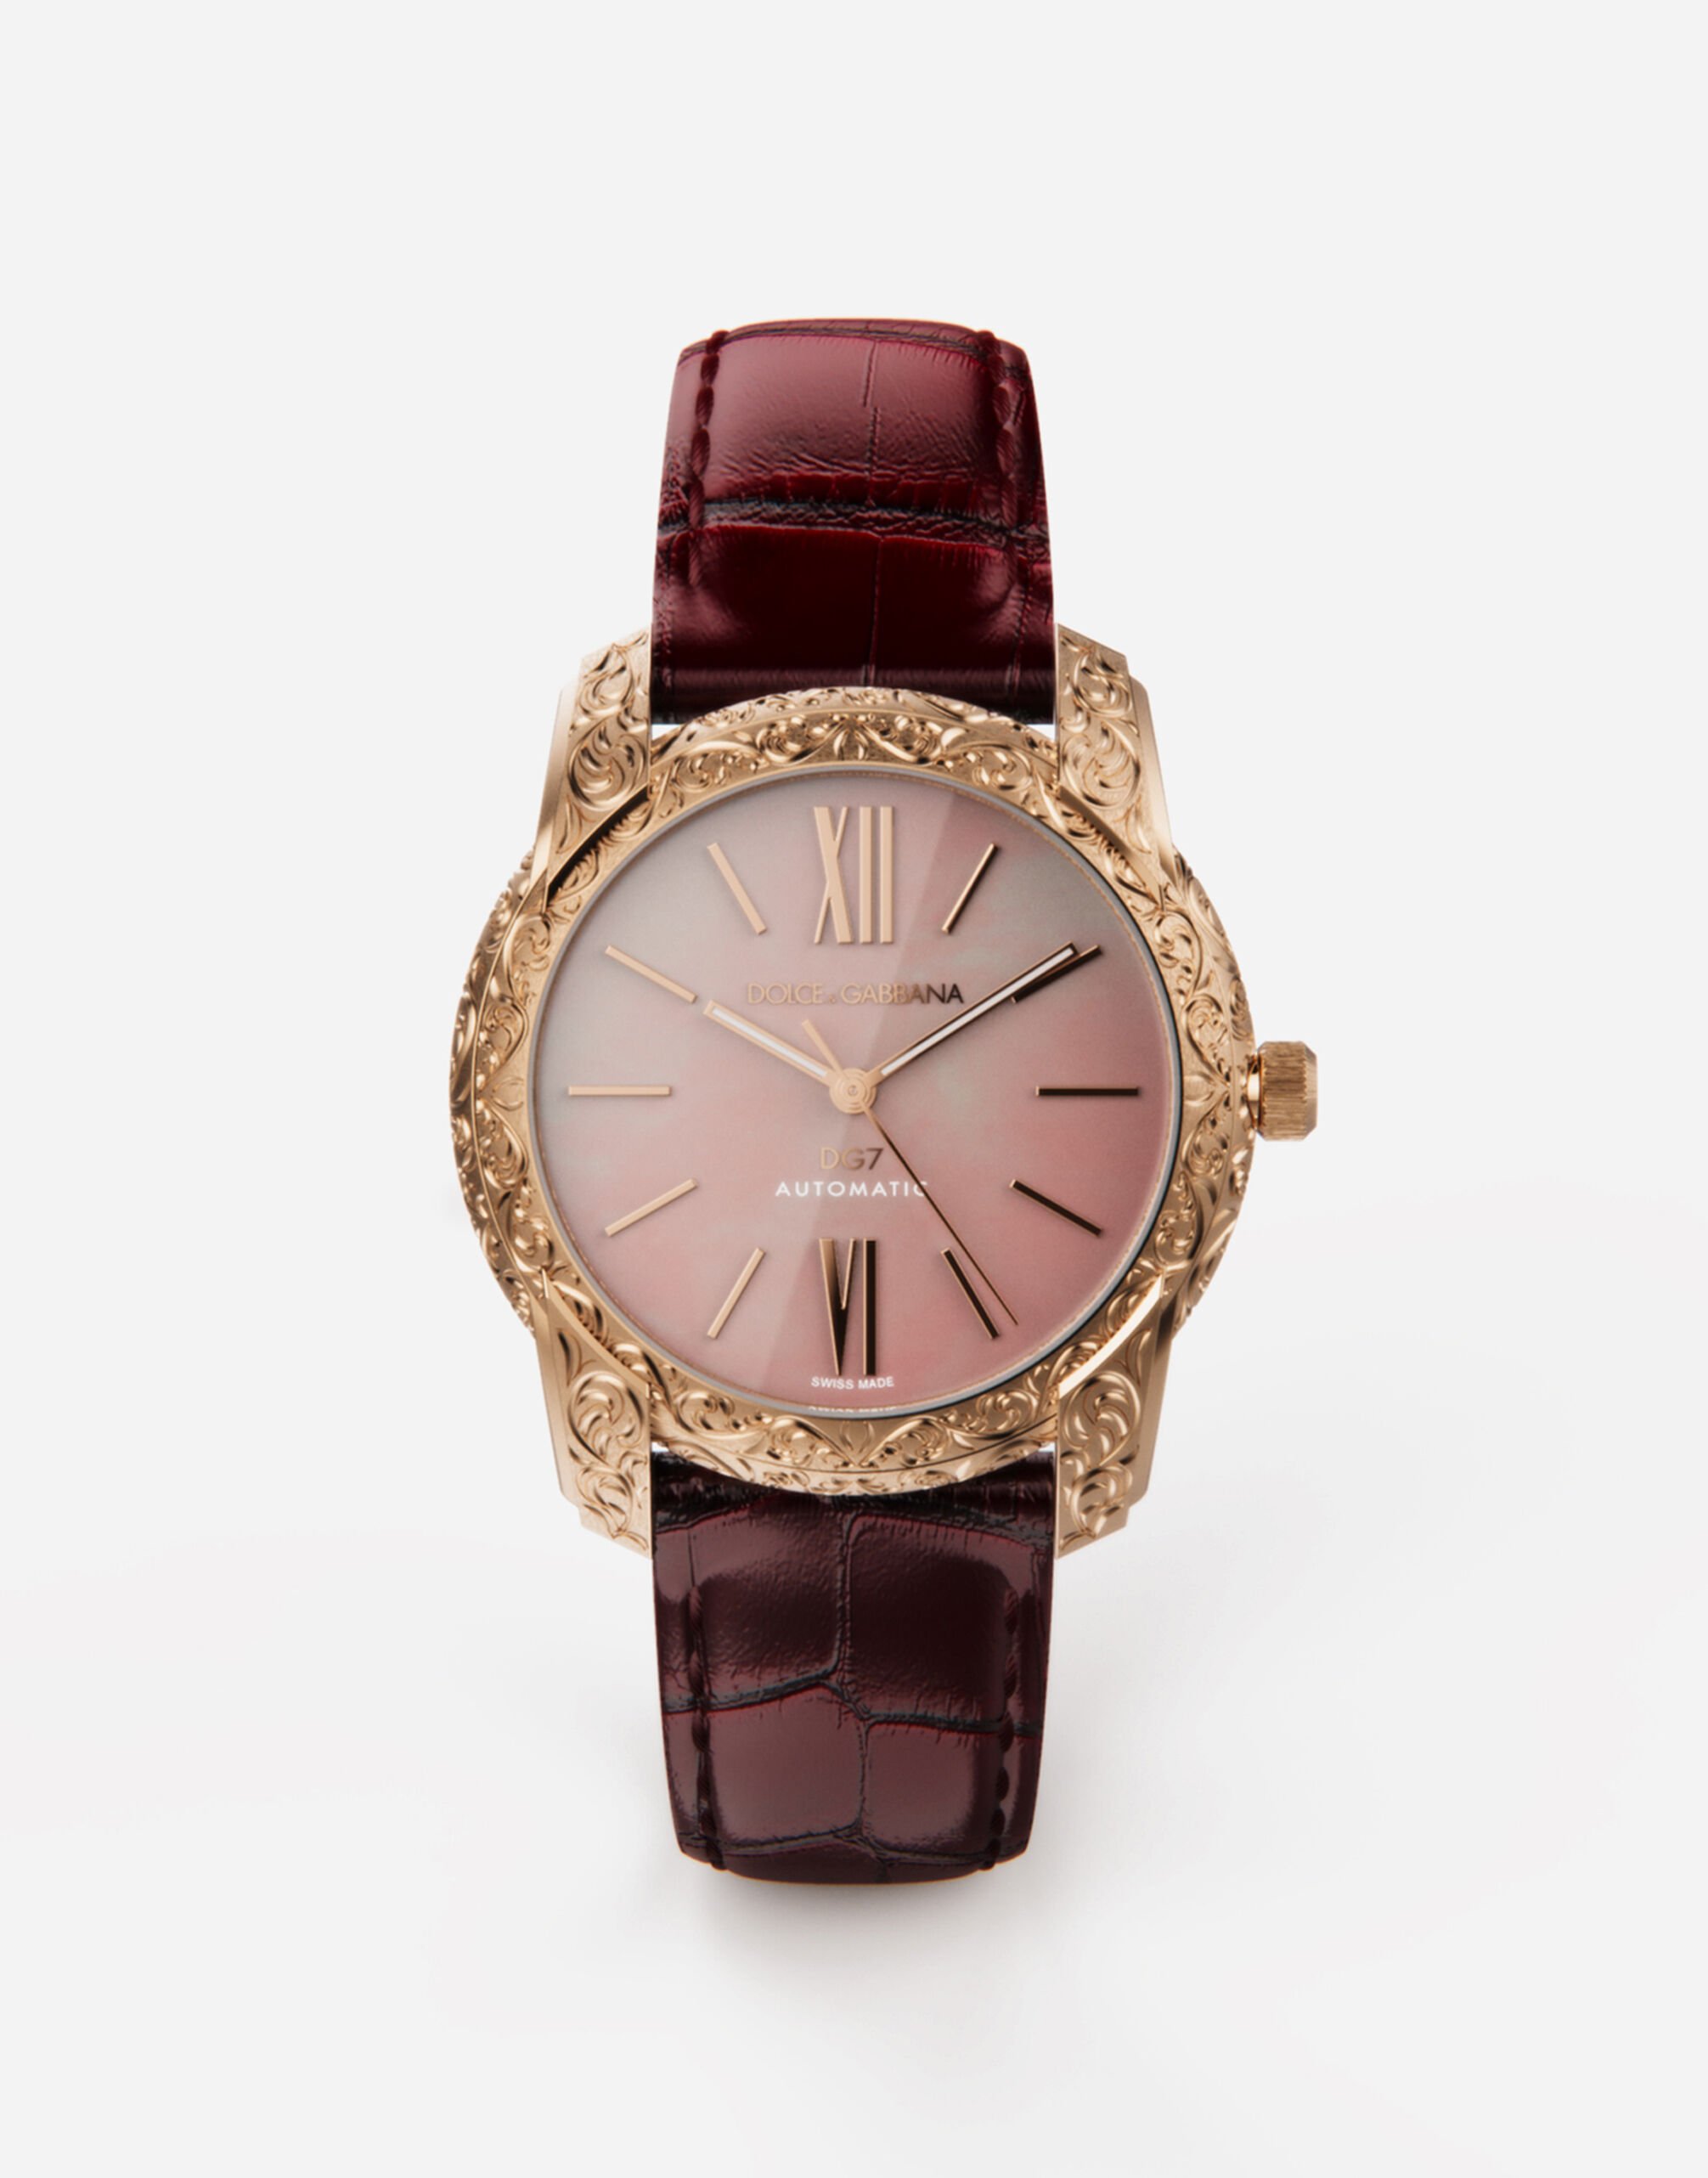 Dolce & Gabbana Uhr DG7 Gattopardo rotgold mit rosa perlmutt BORDEAUX WWEEGGWW045